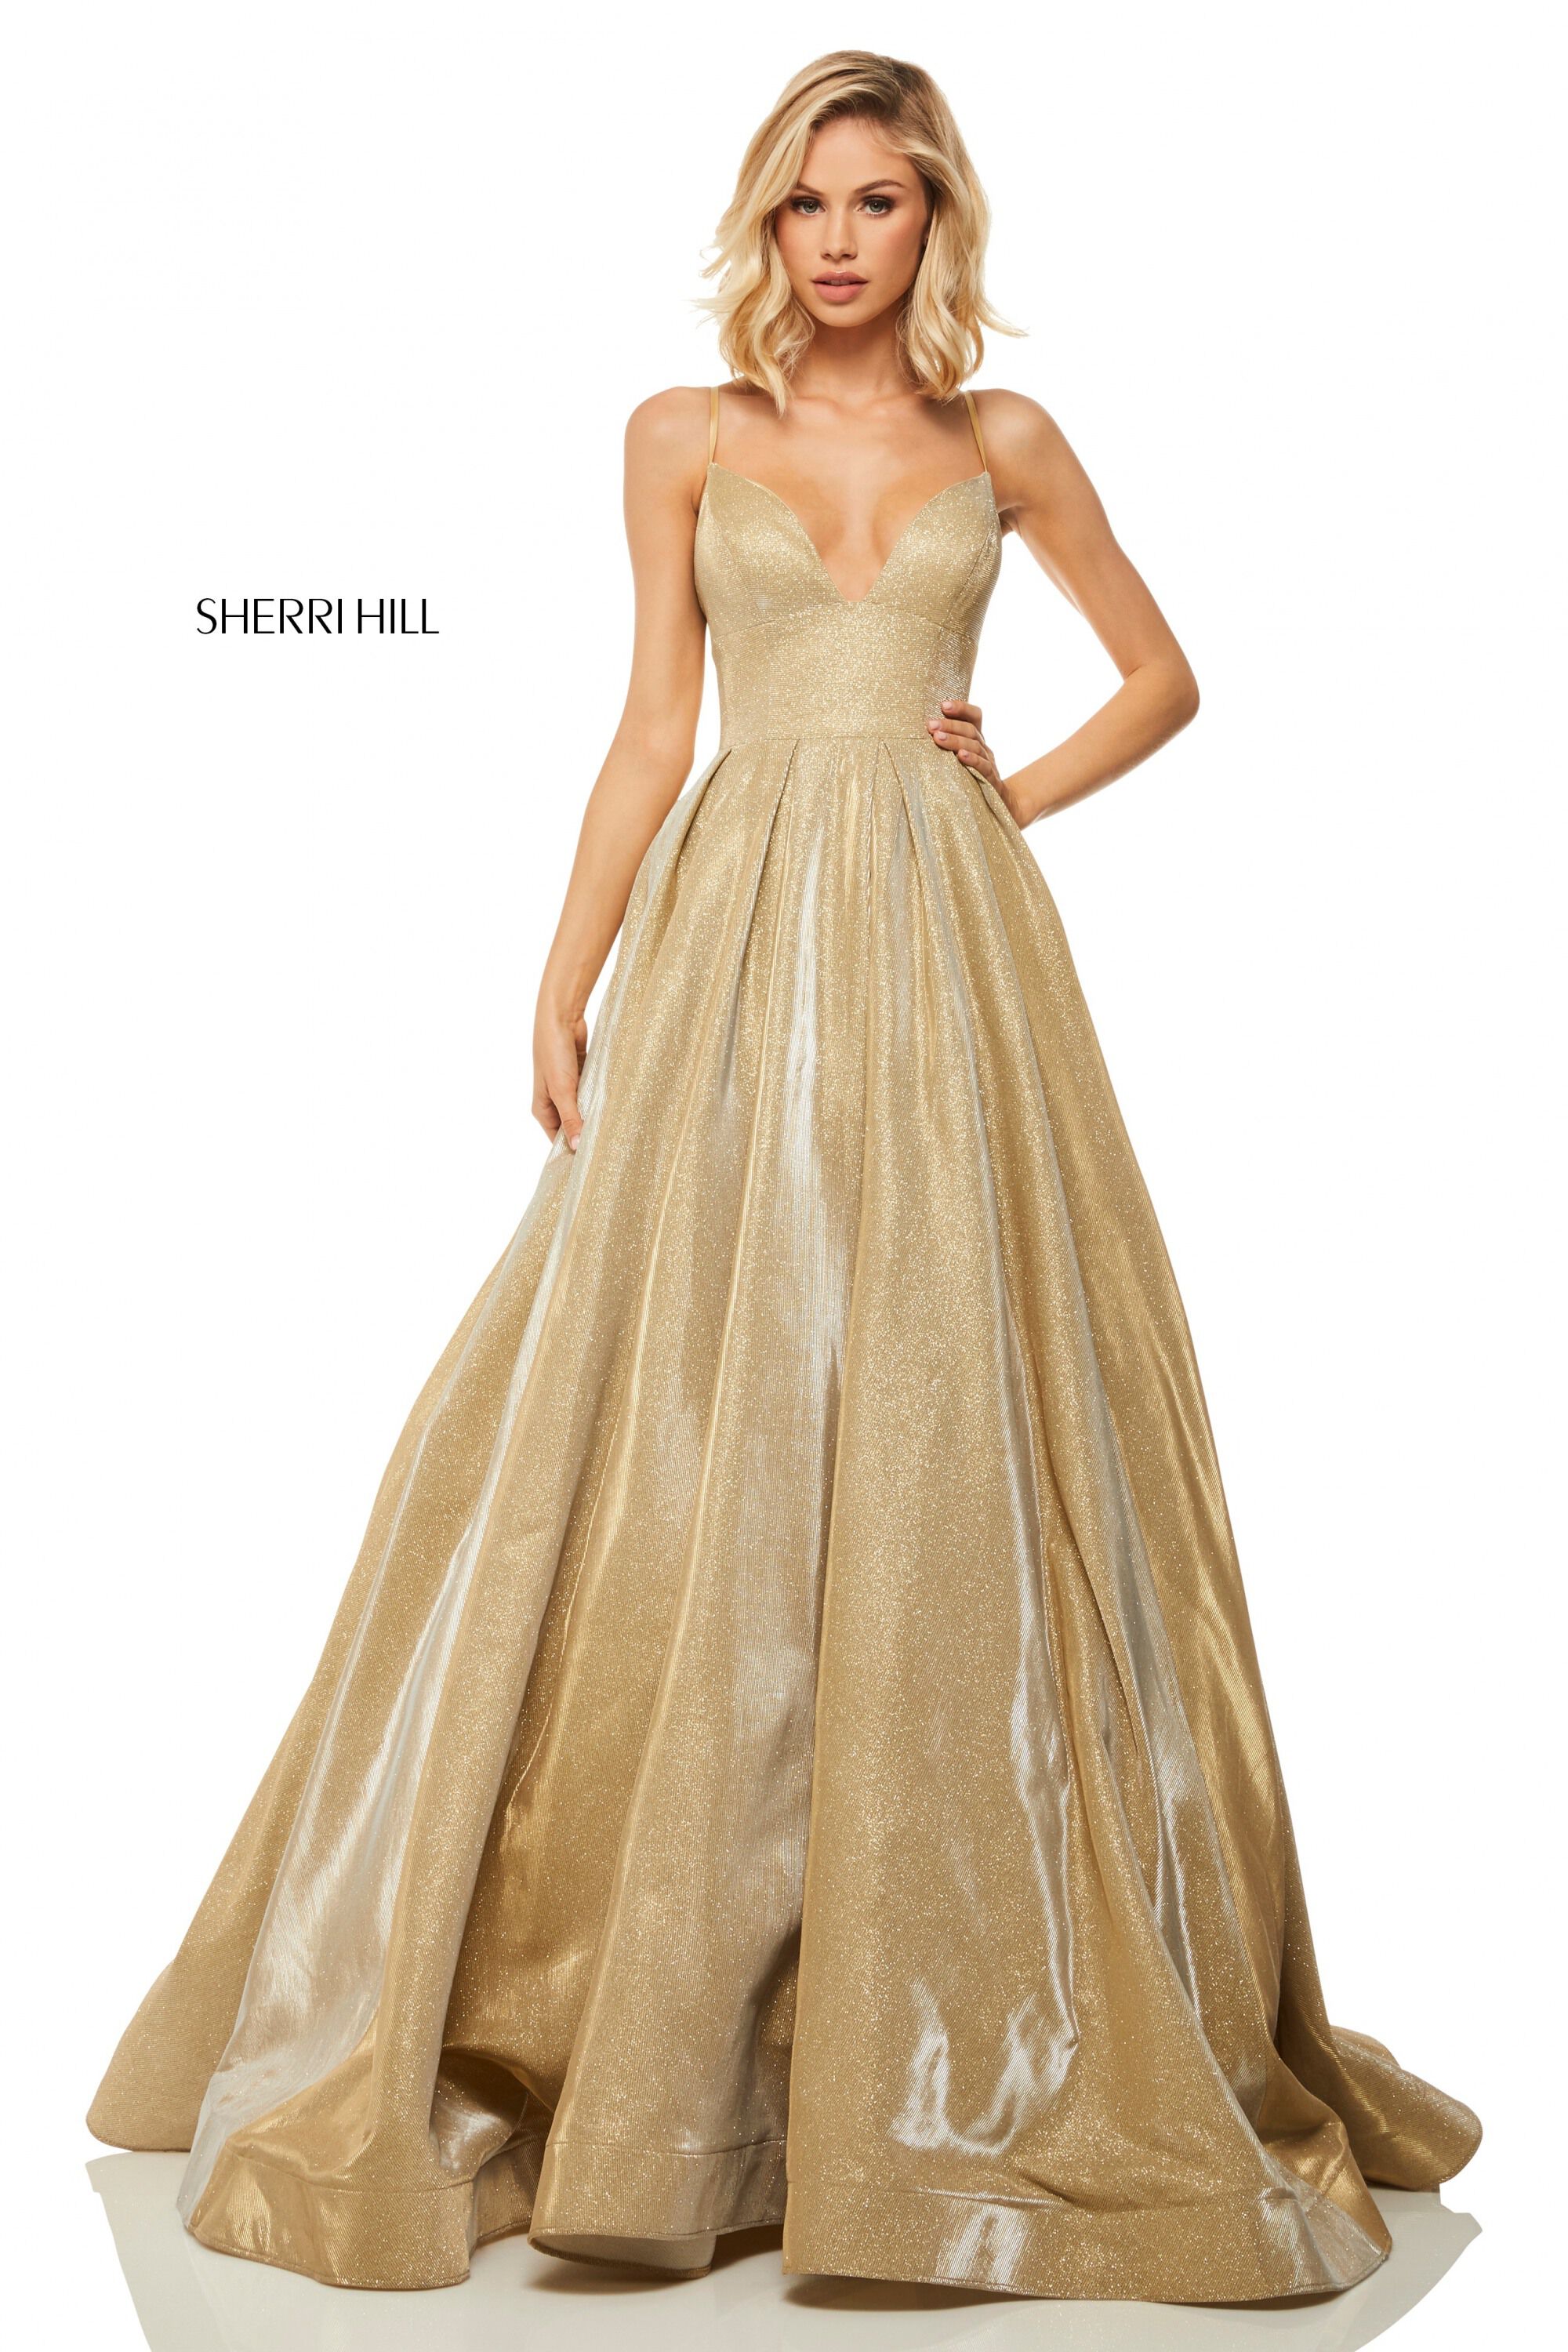 sherri hill gold dress